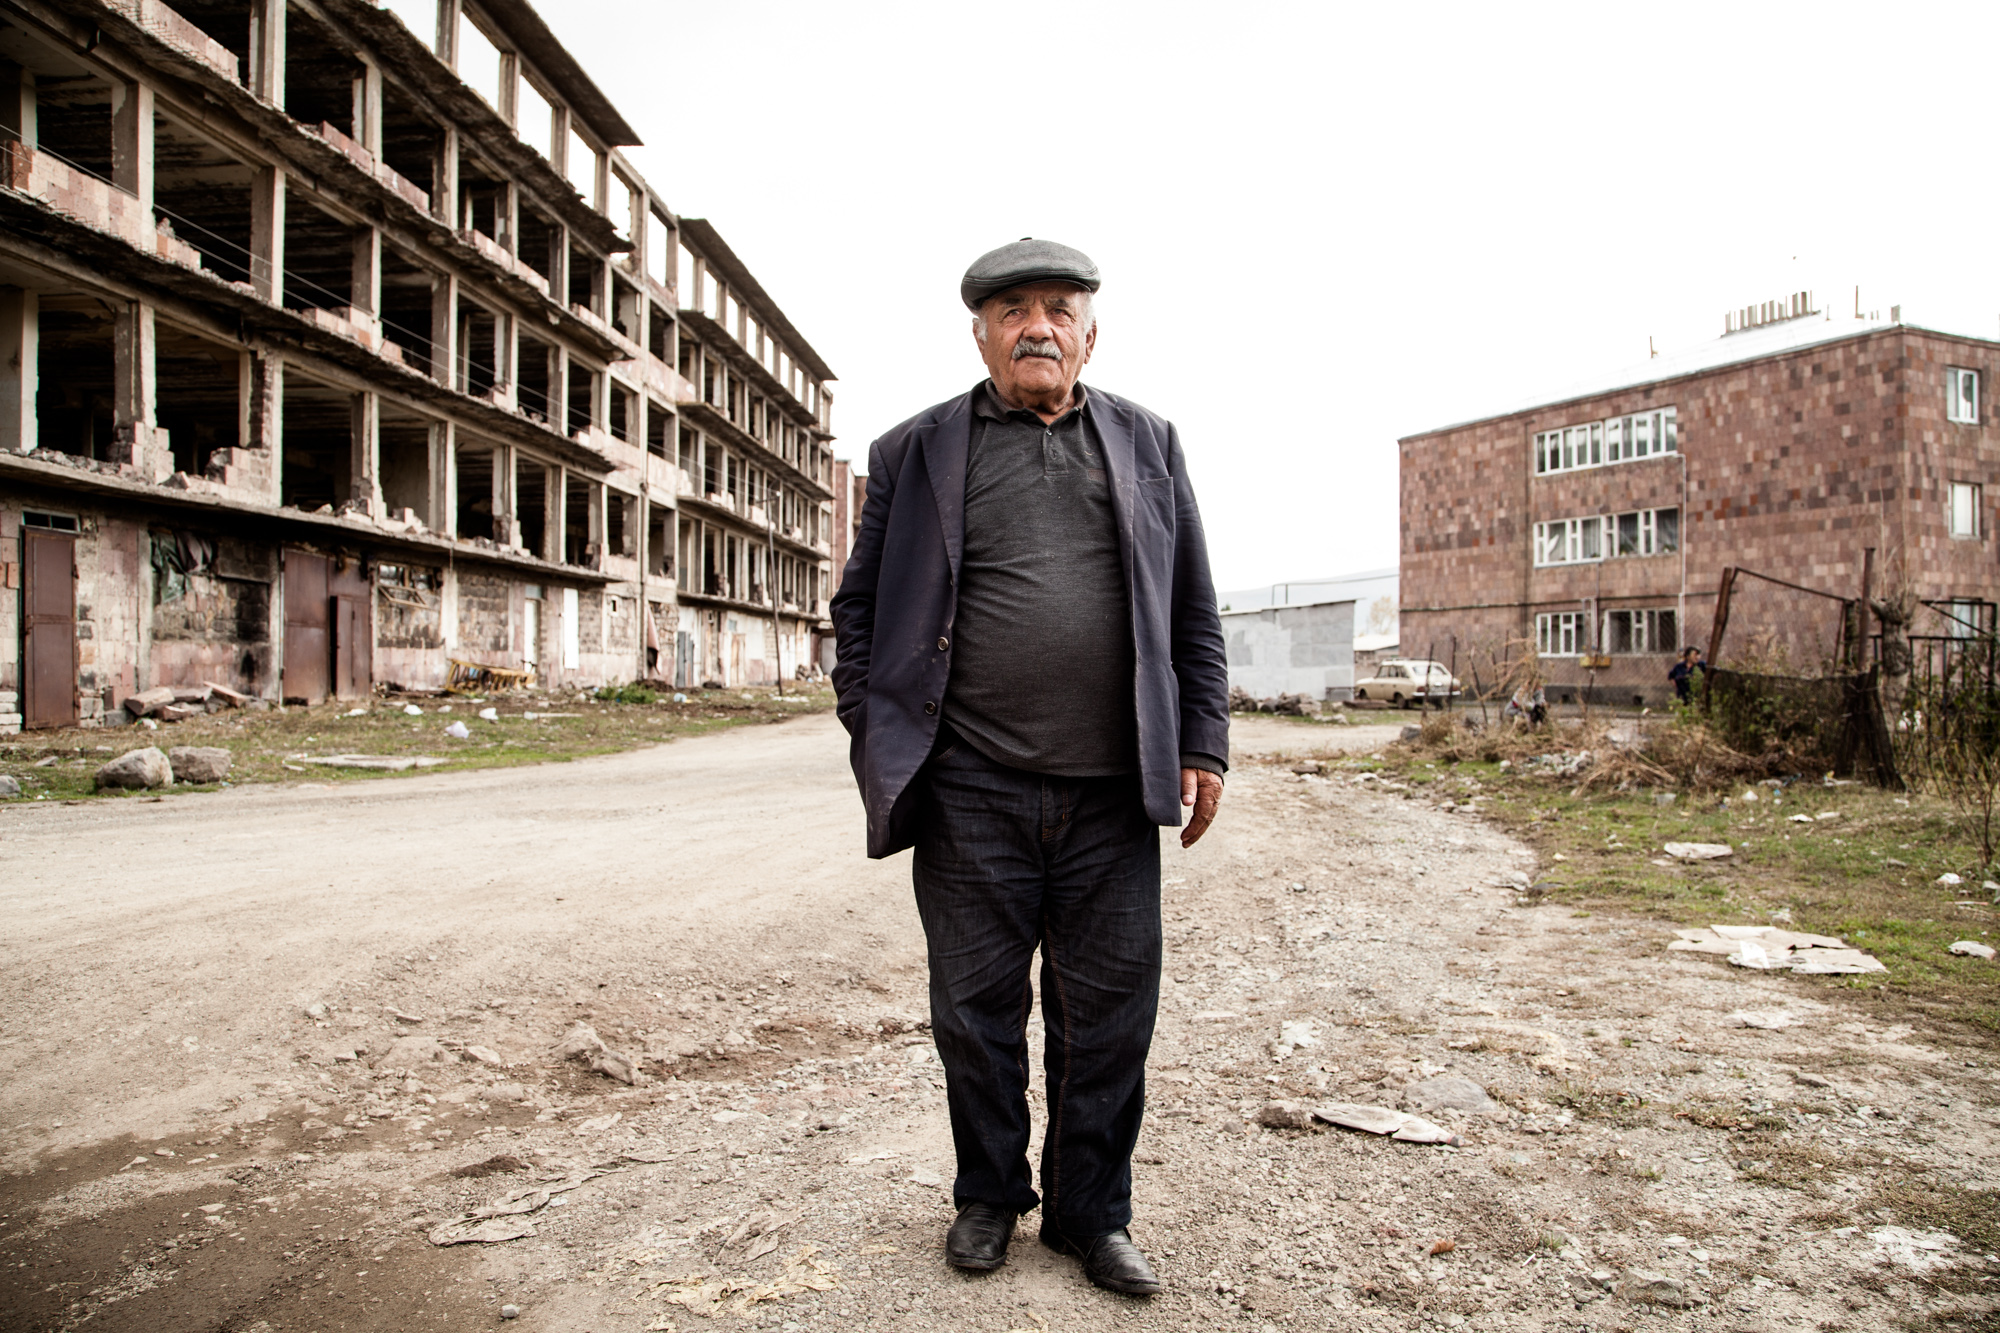  6 Décembre 1988. La terre tremble à 50 km d'Ashotsk, au nord-ouest de l'Arménie. Il est 11H40. Monsieur Stéfésov était chauffeur. Derrière lui, les ruines toujours debouts d'un des nombreux immeubles évacués. 